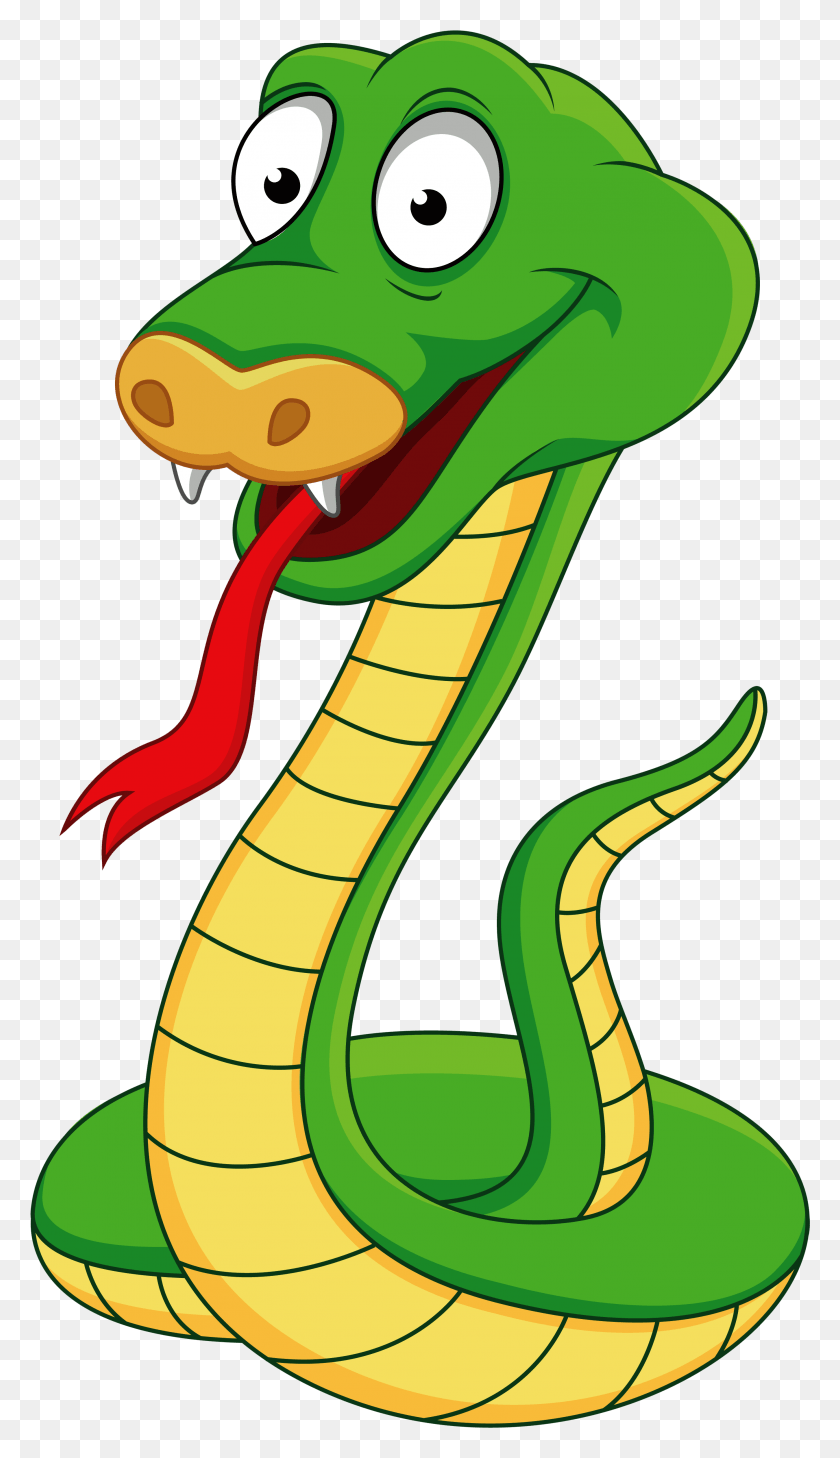 2698x4836 X 5000 19 Serpiente De Dibujos Animados, Reptil, Animal, Cobra Hd Png